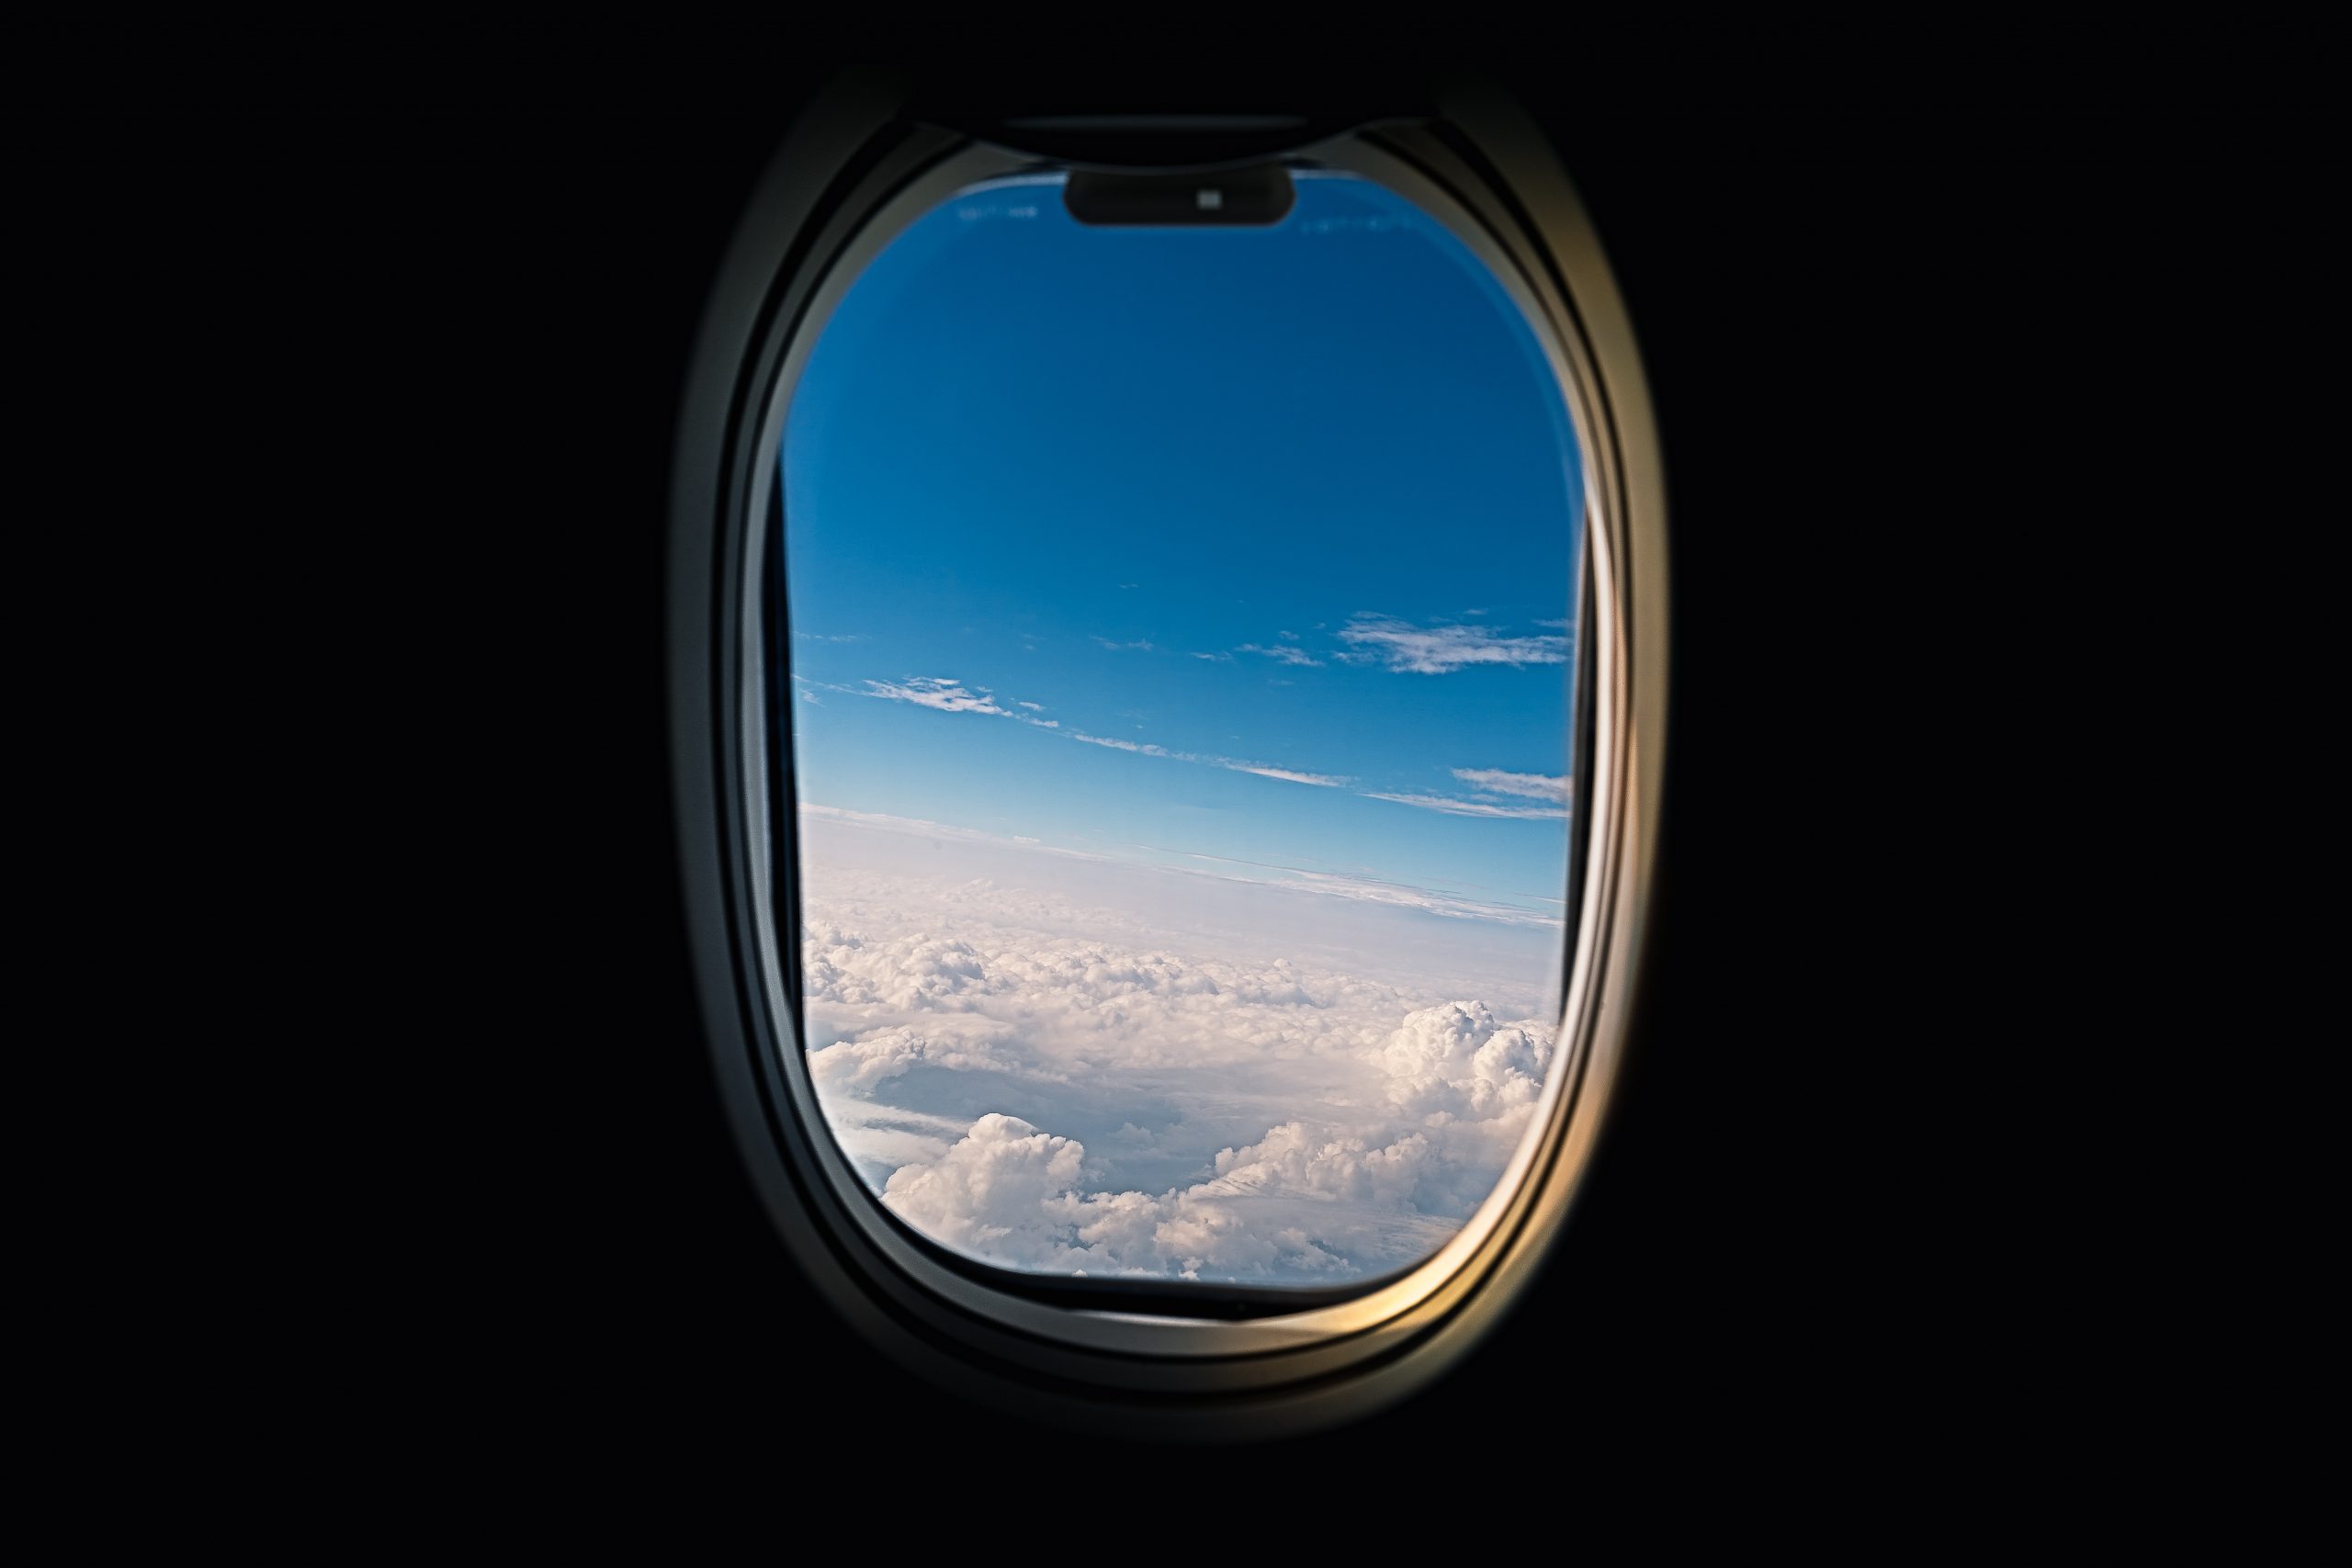 Viagens em companhias aéreas low cost: vale a pena?